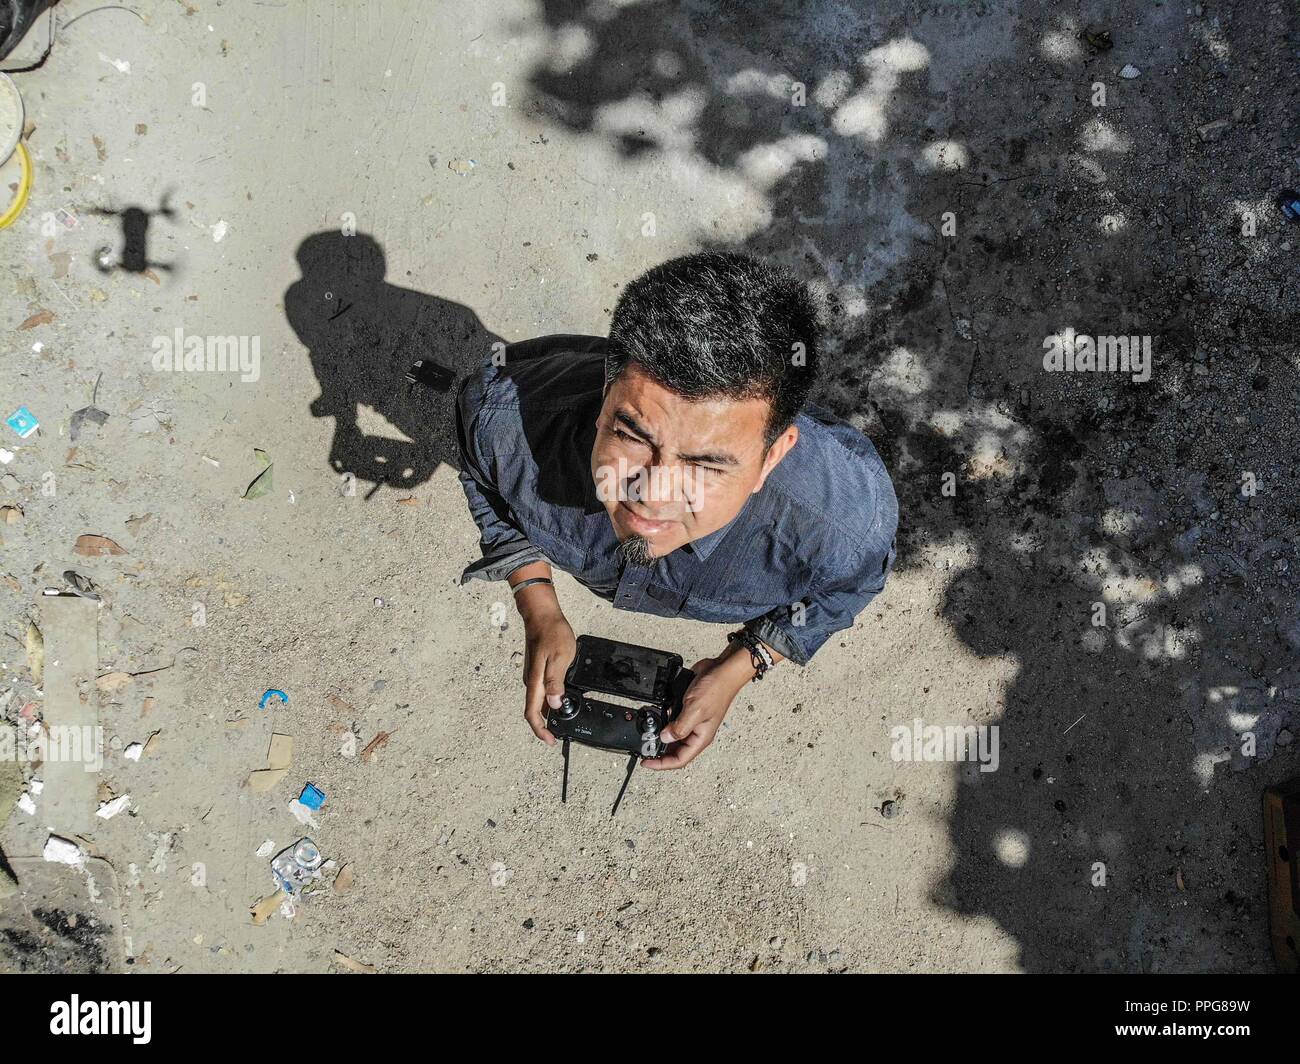 Auto-portrait de Luis Gutierrez, photographe, photojournaliste. battant un bourdon dans la cour de la maison de ses parents. Quartier populaire progressiste. Banque D'Images